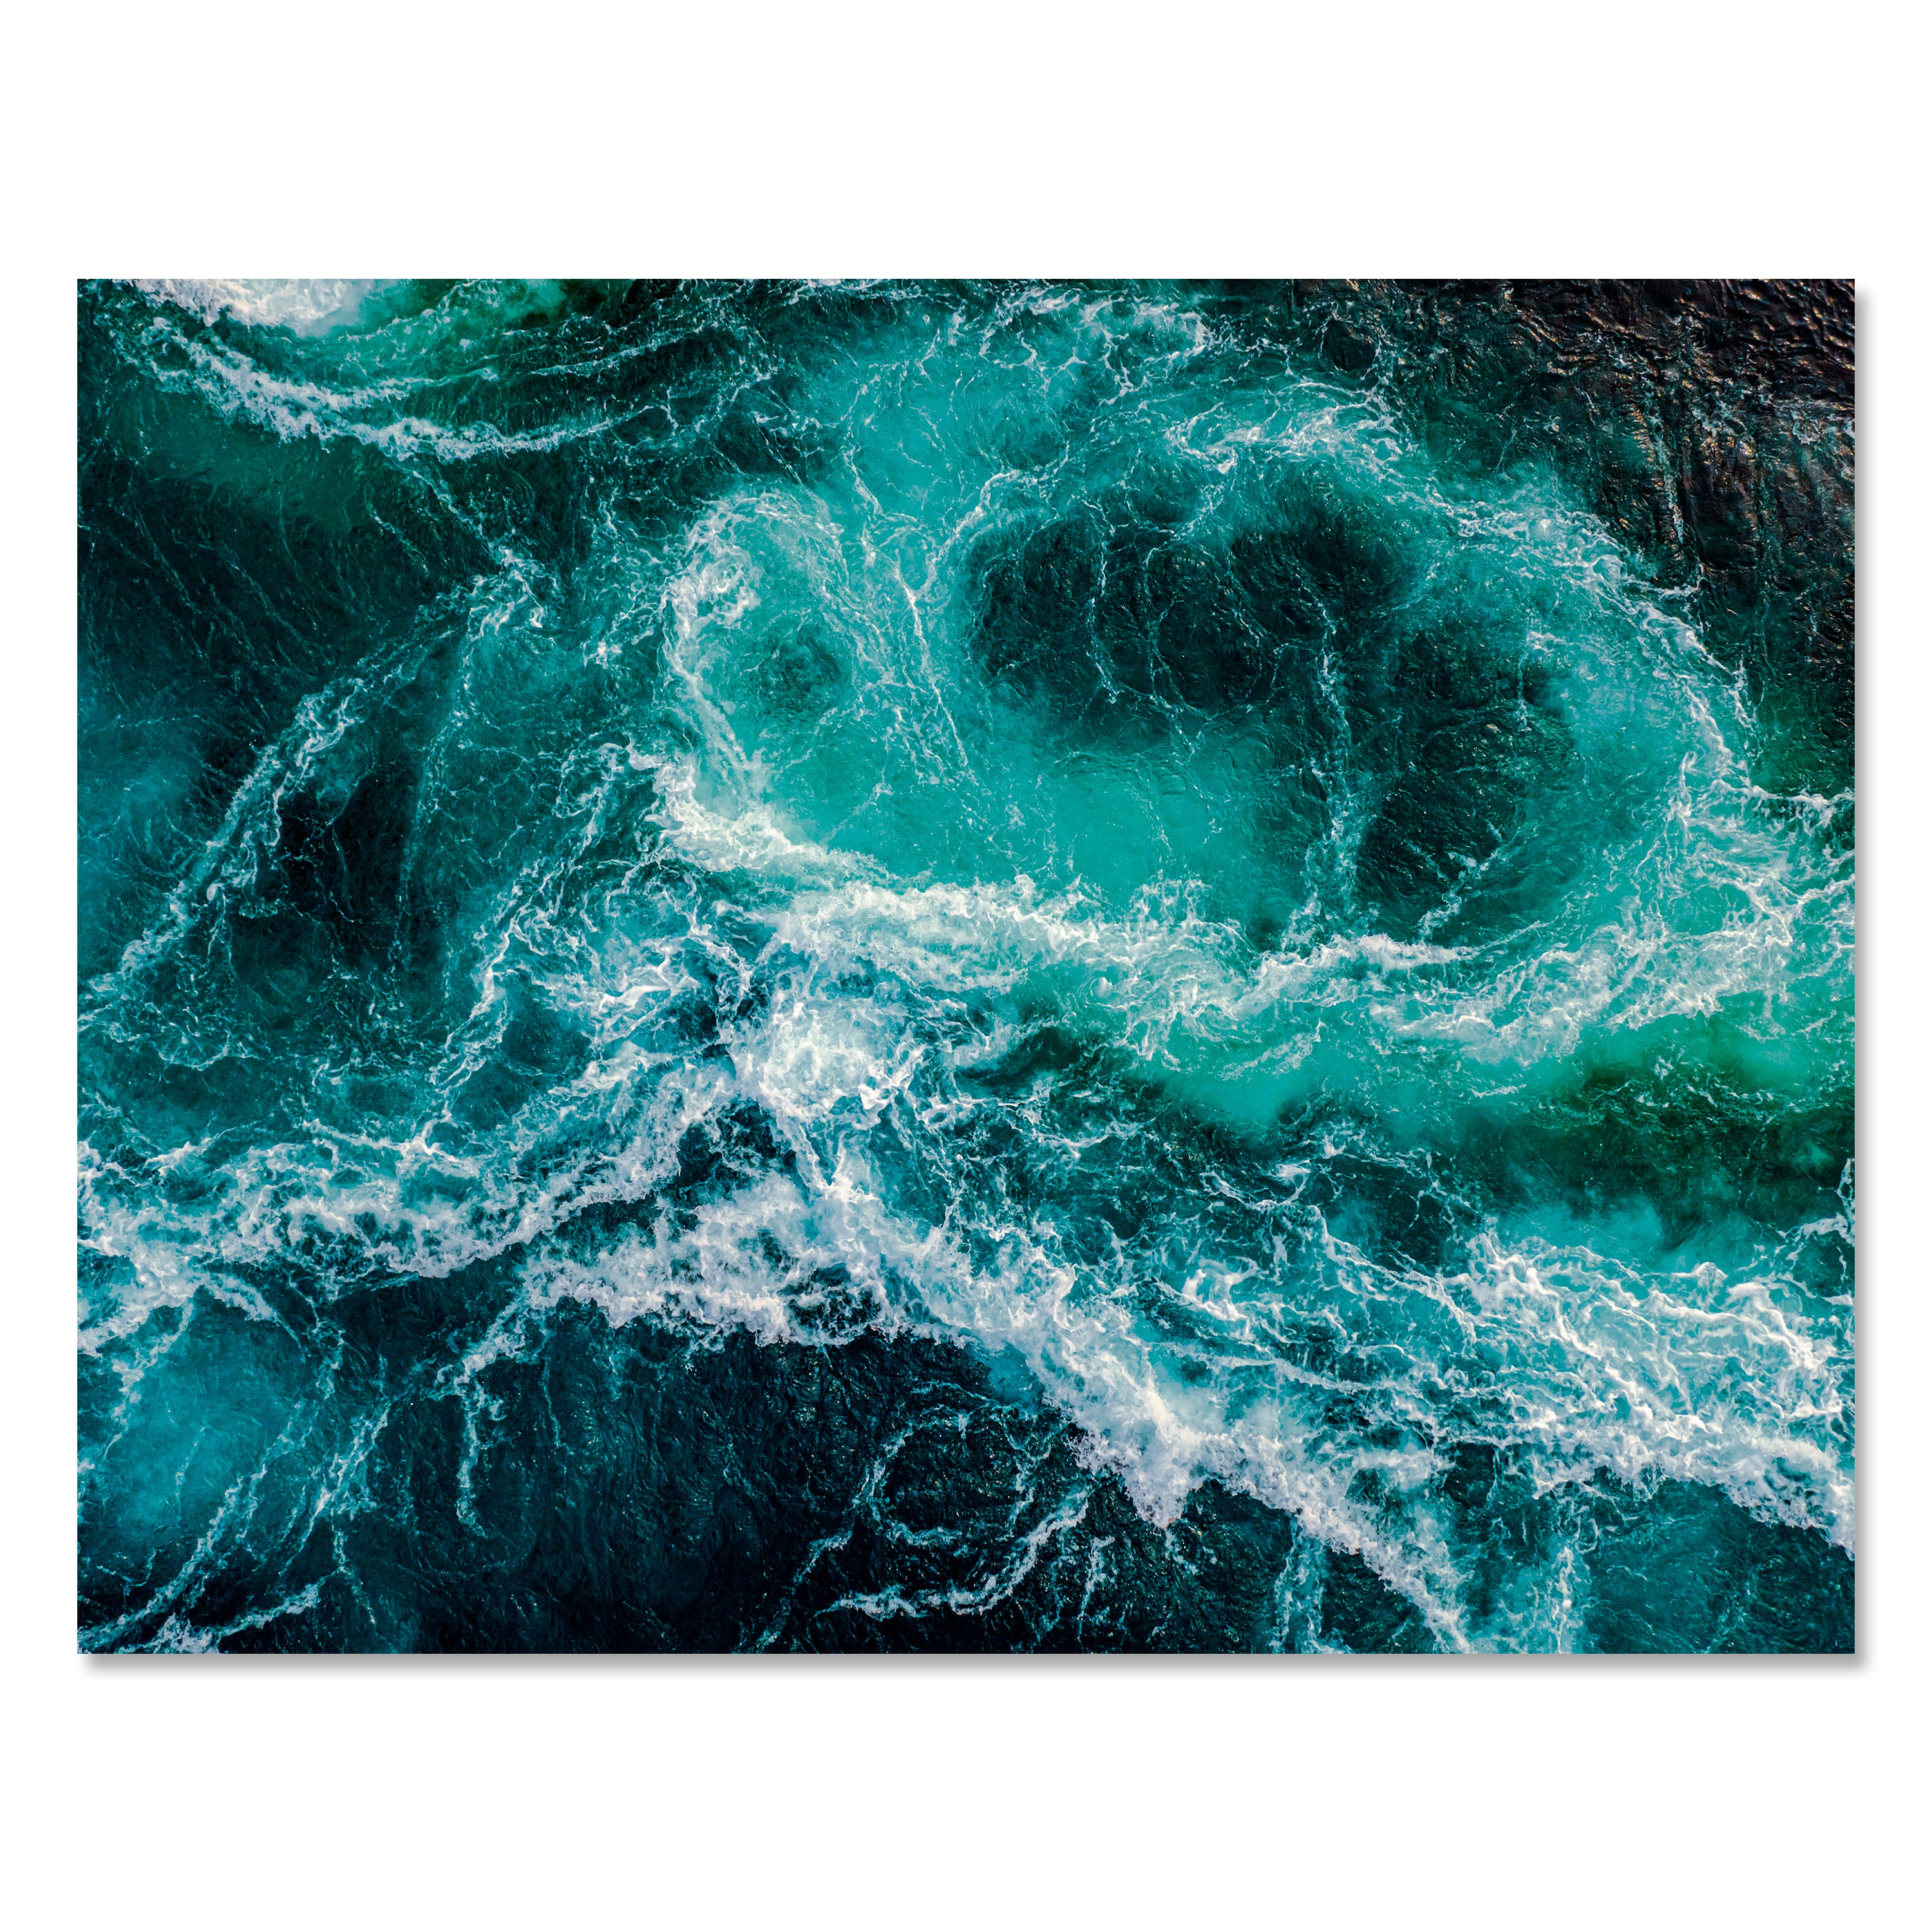 Leinwandbild Meer & Wasser, Querformat, Raues Meer 1 M0111 kaufen - Bild 1